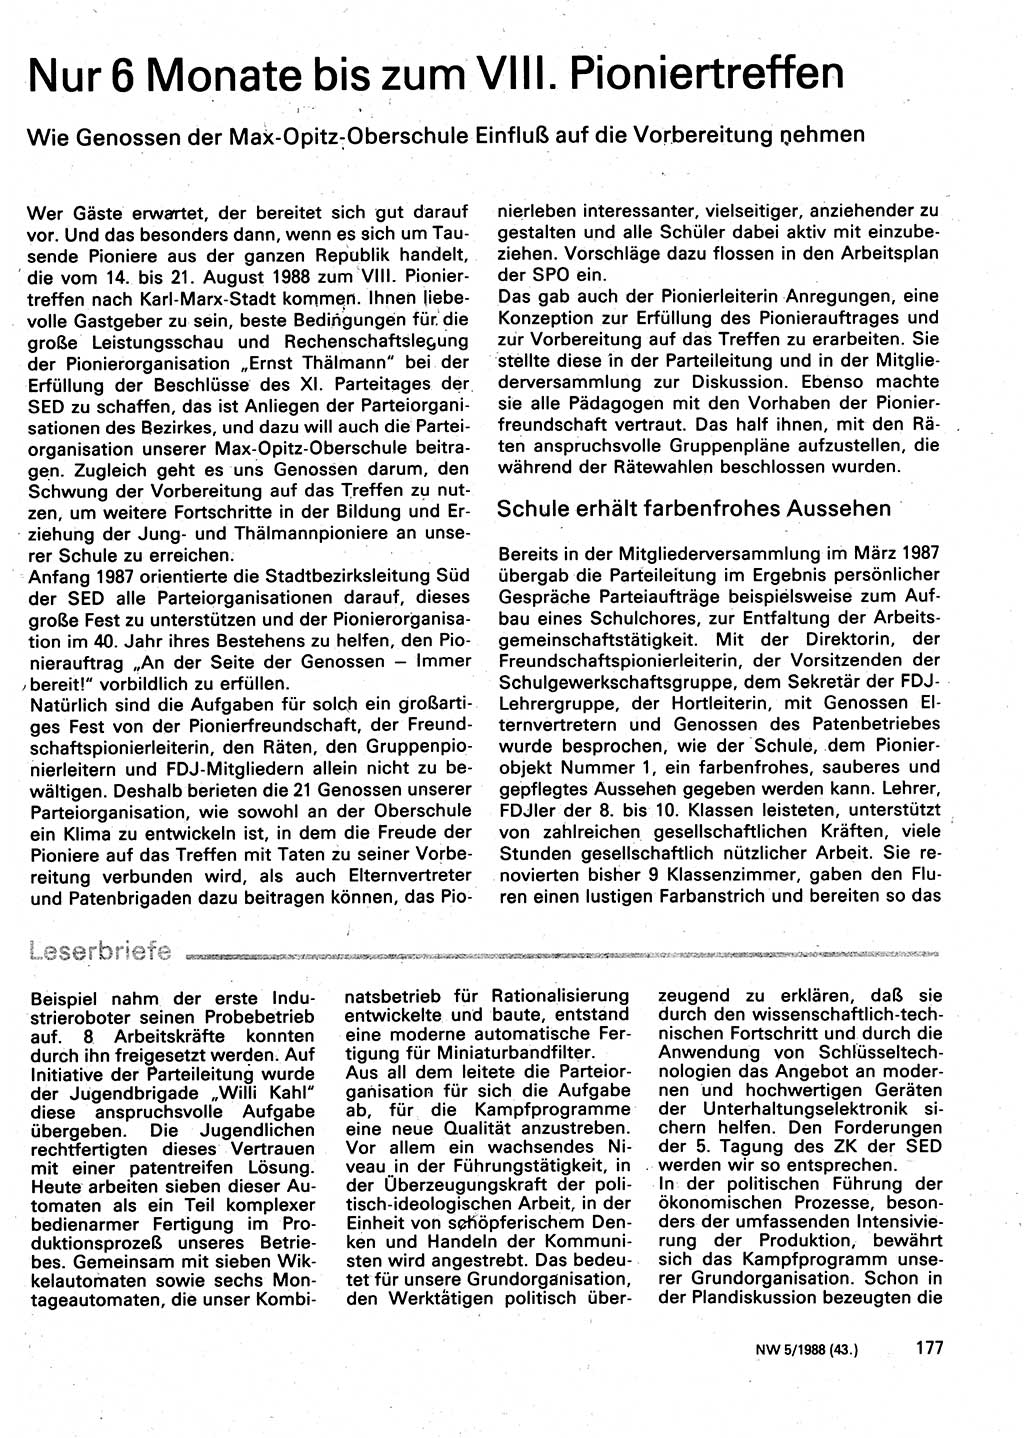 Neuer Weg (NW), Organ des Zentralkomitees (ZK) der SED (Sozialistische Einheitspartei Deutschlands) für Fragen des Parteilebens, 43. Jahrgang [Deutsche Demokratische Republik (DDR)] 1988, Seite 177 (NW ZK SED DDR 1988, S. 177)